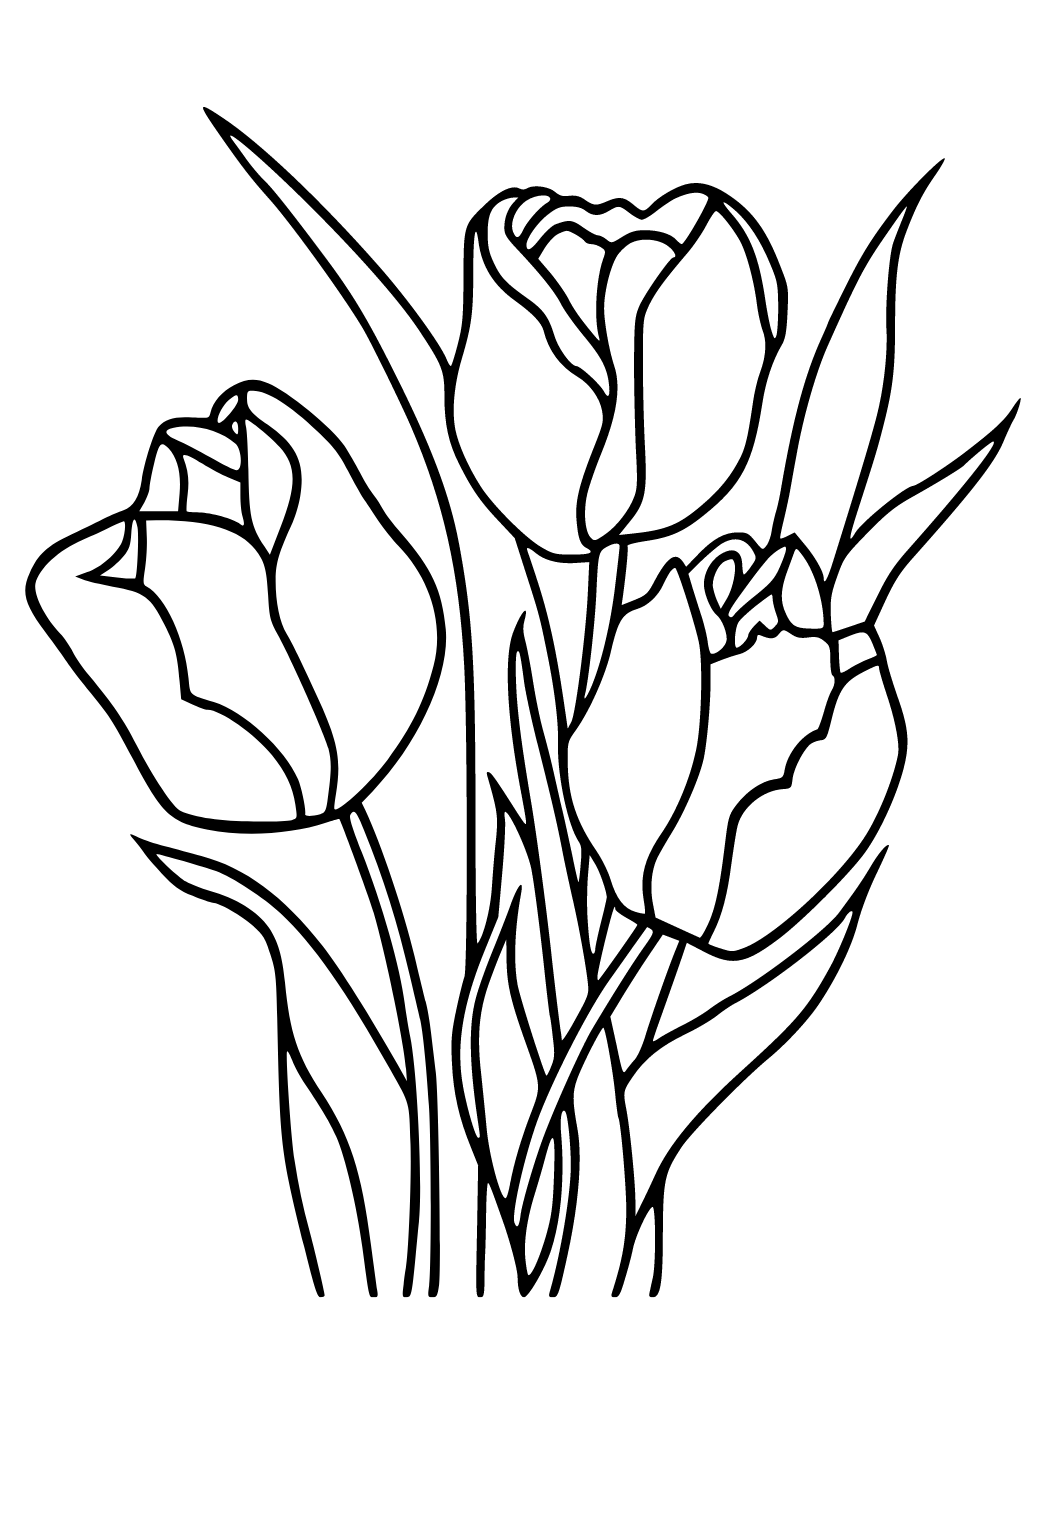 VẼ HOA TULIPS CHO BACKGROUND - Cách mình vẽ và tô màu hoa #2 - YouTube